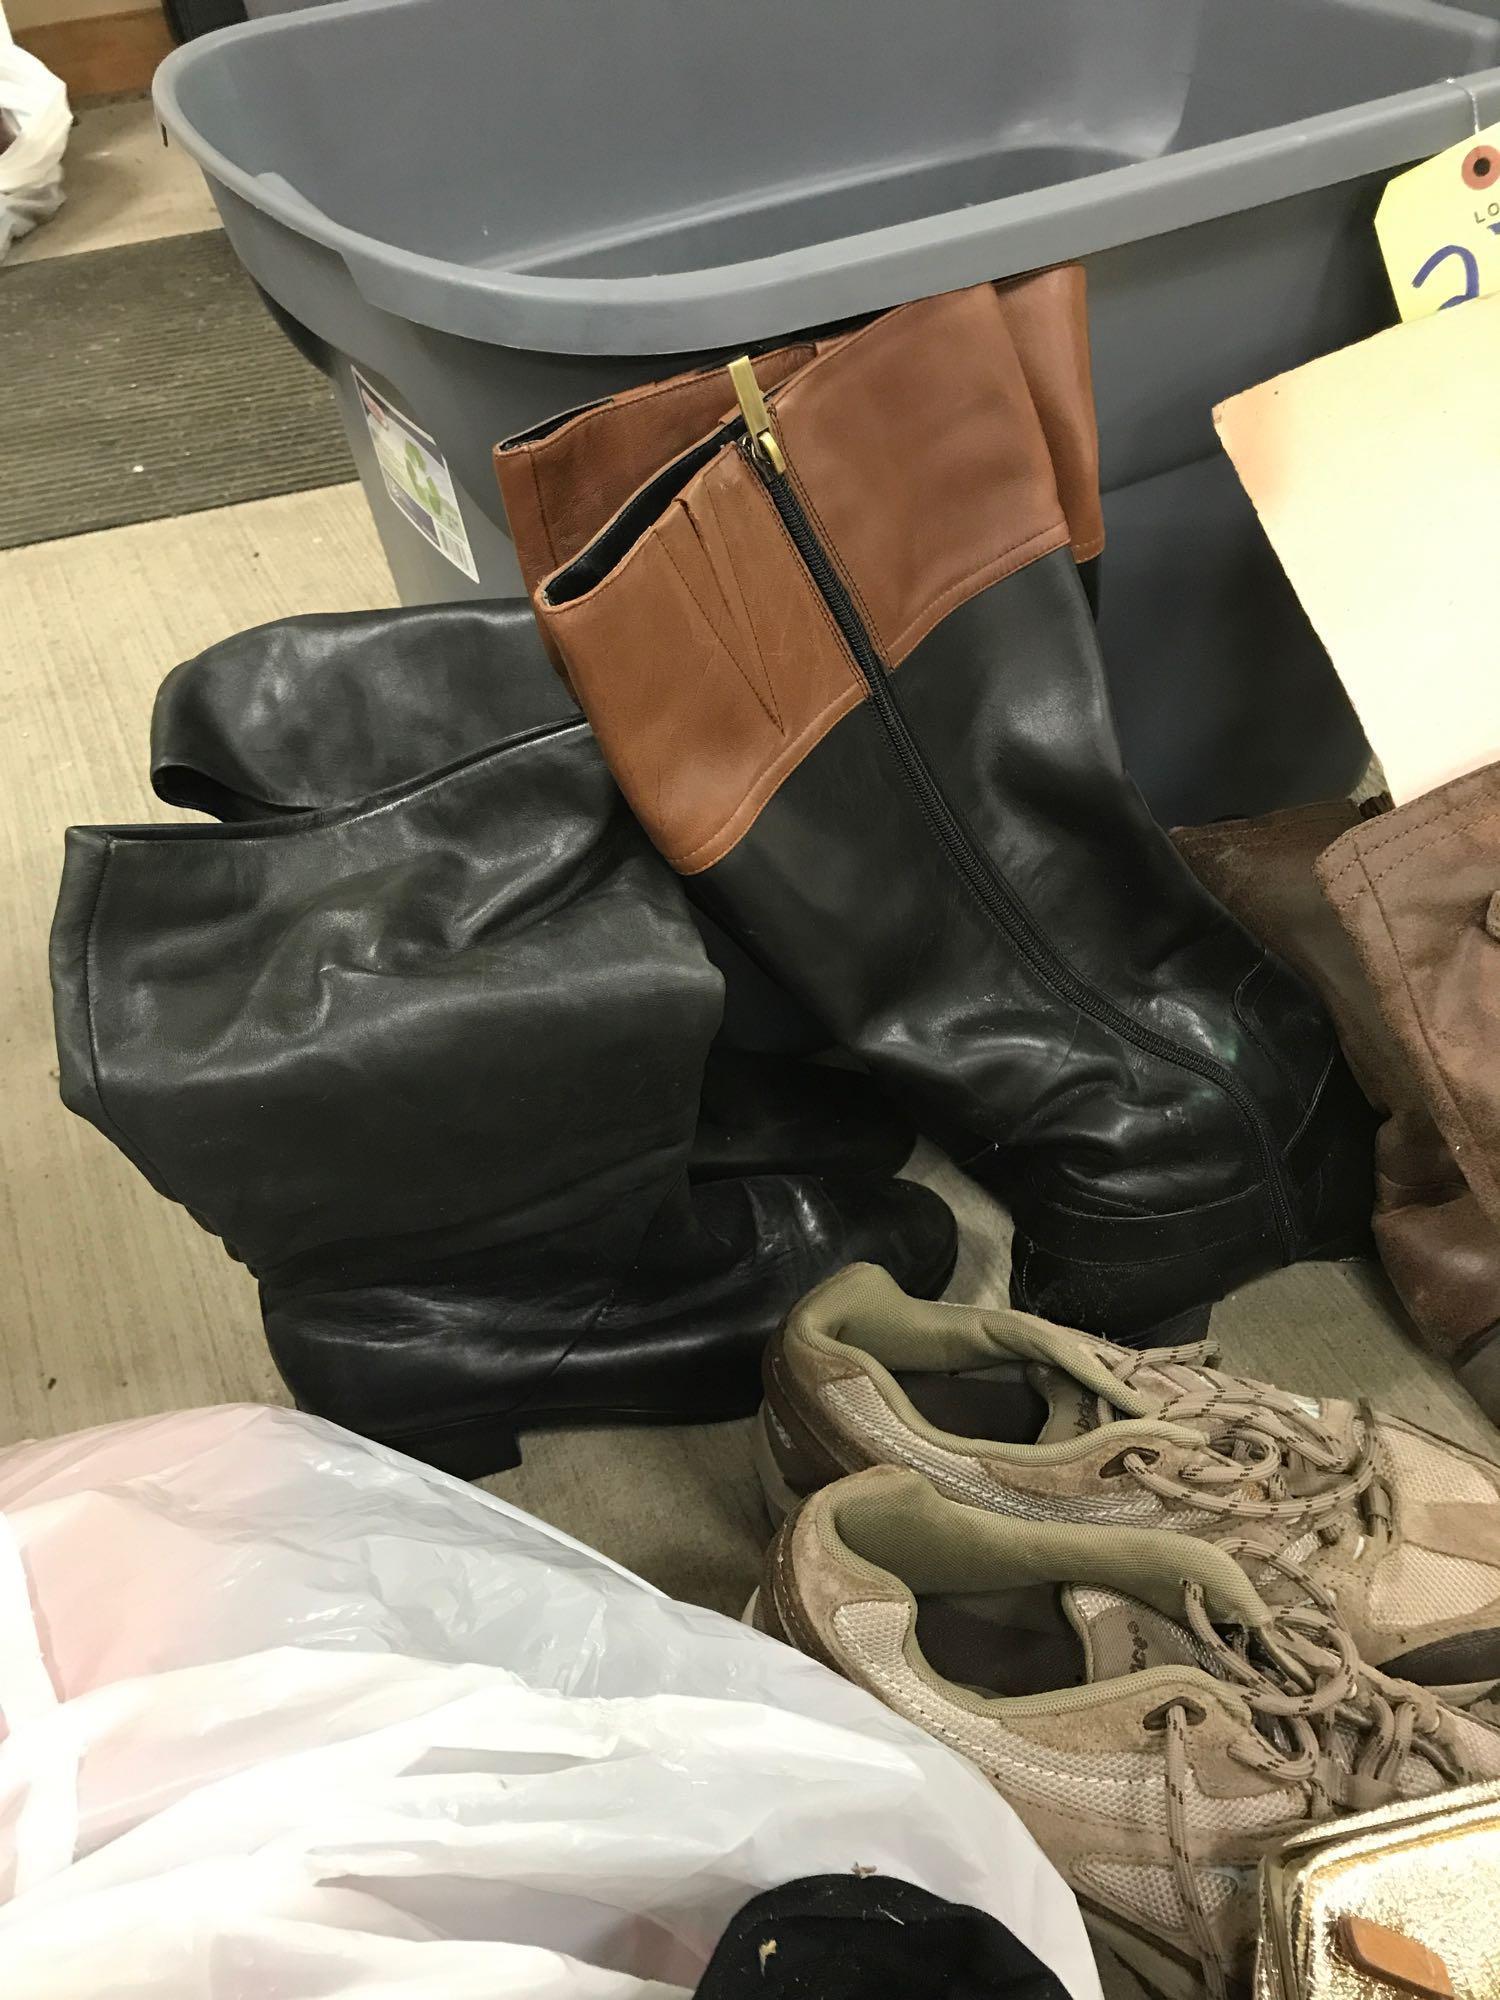 Handbags, purses, boots and shoes, 1 Coach l, liz Claiborne